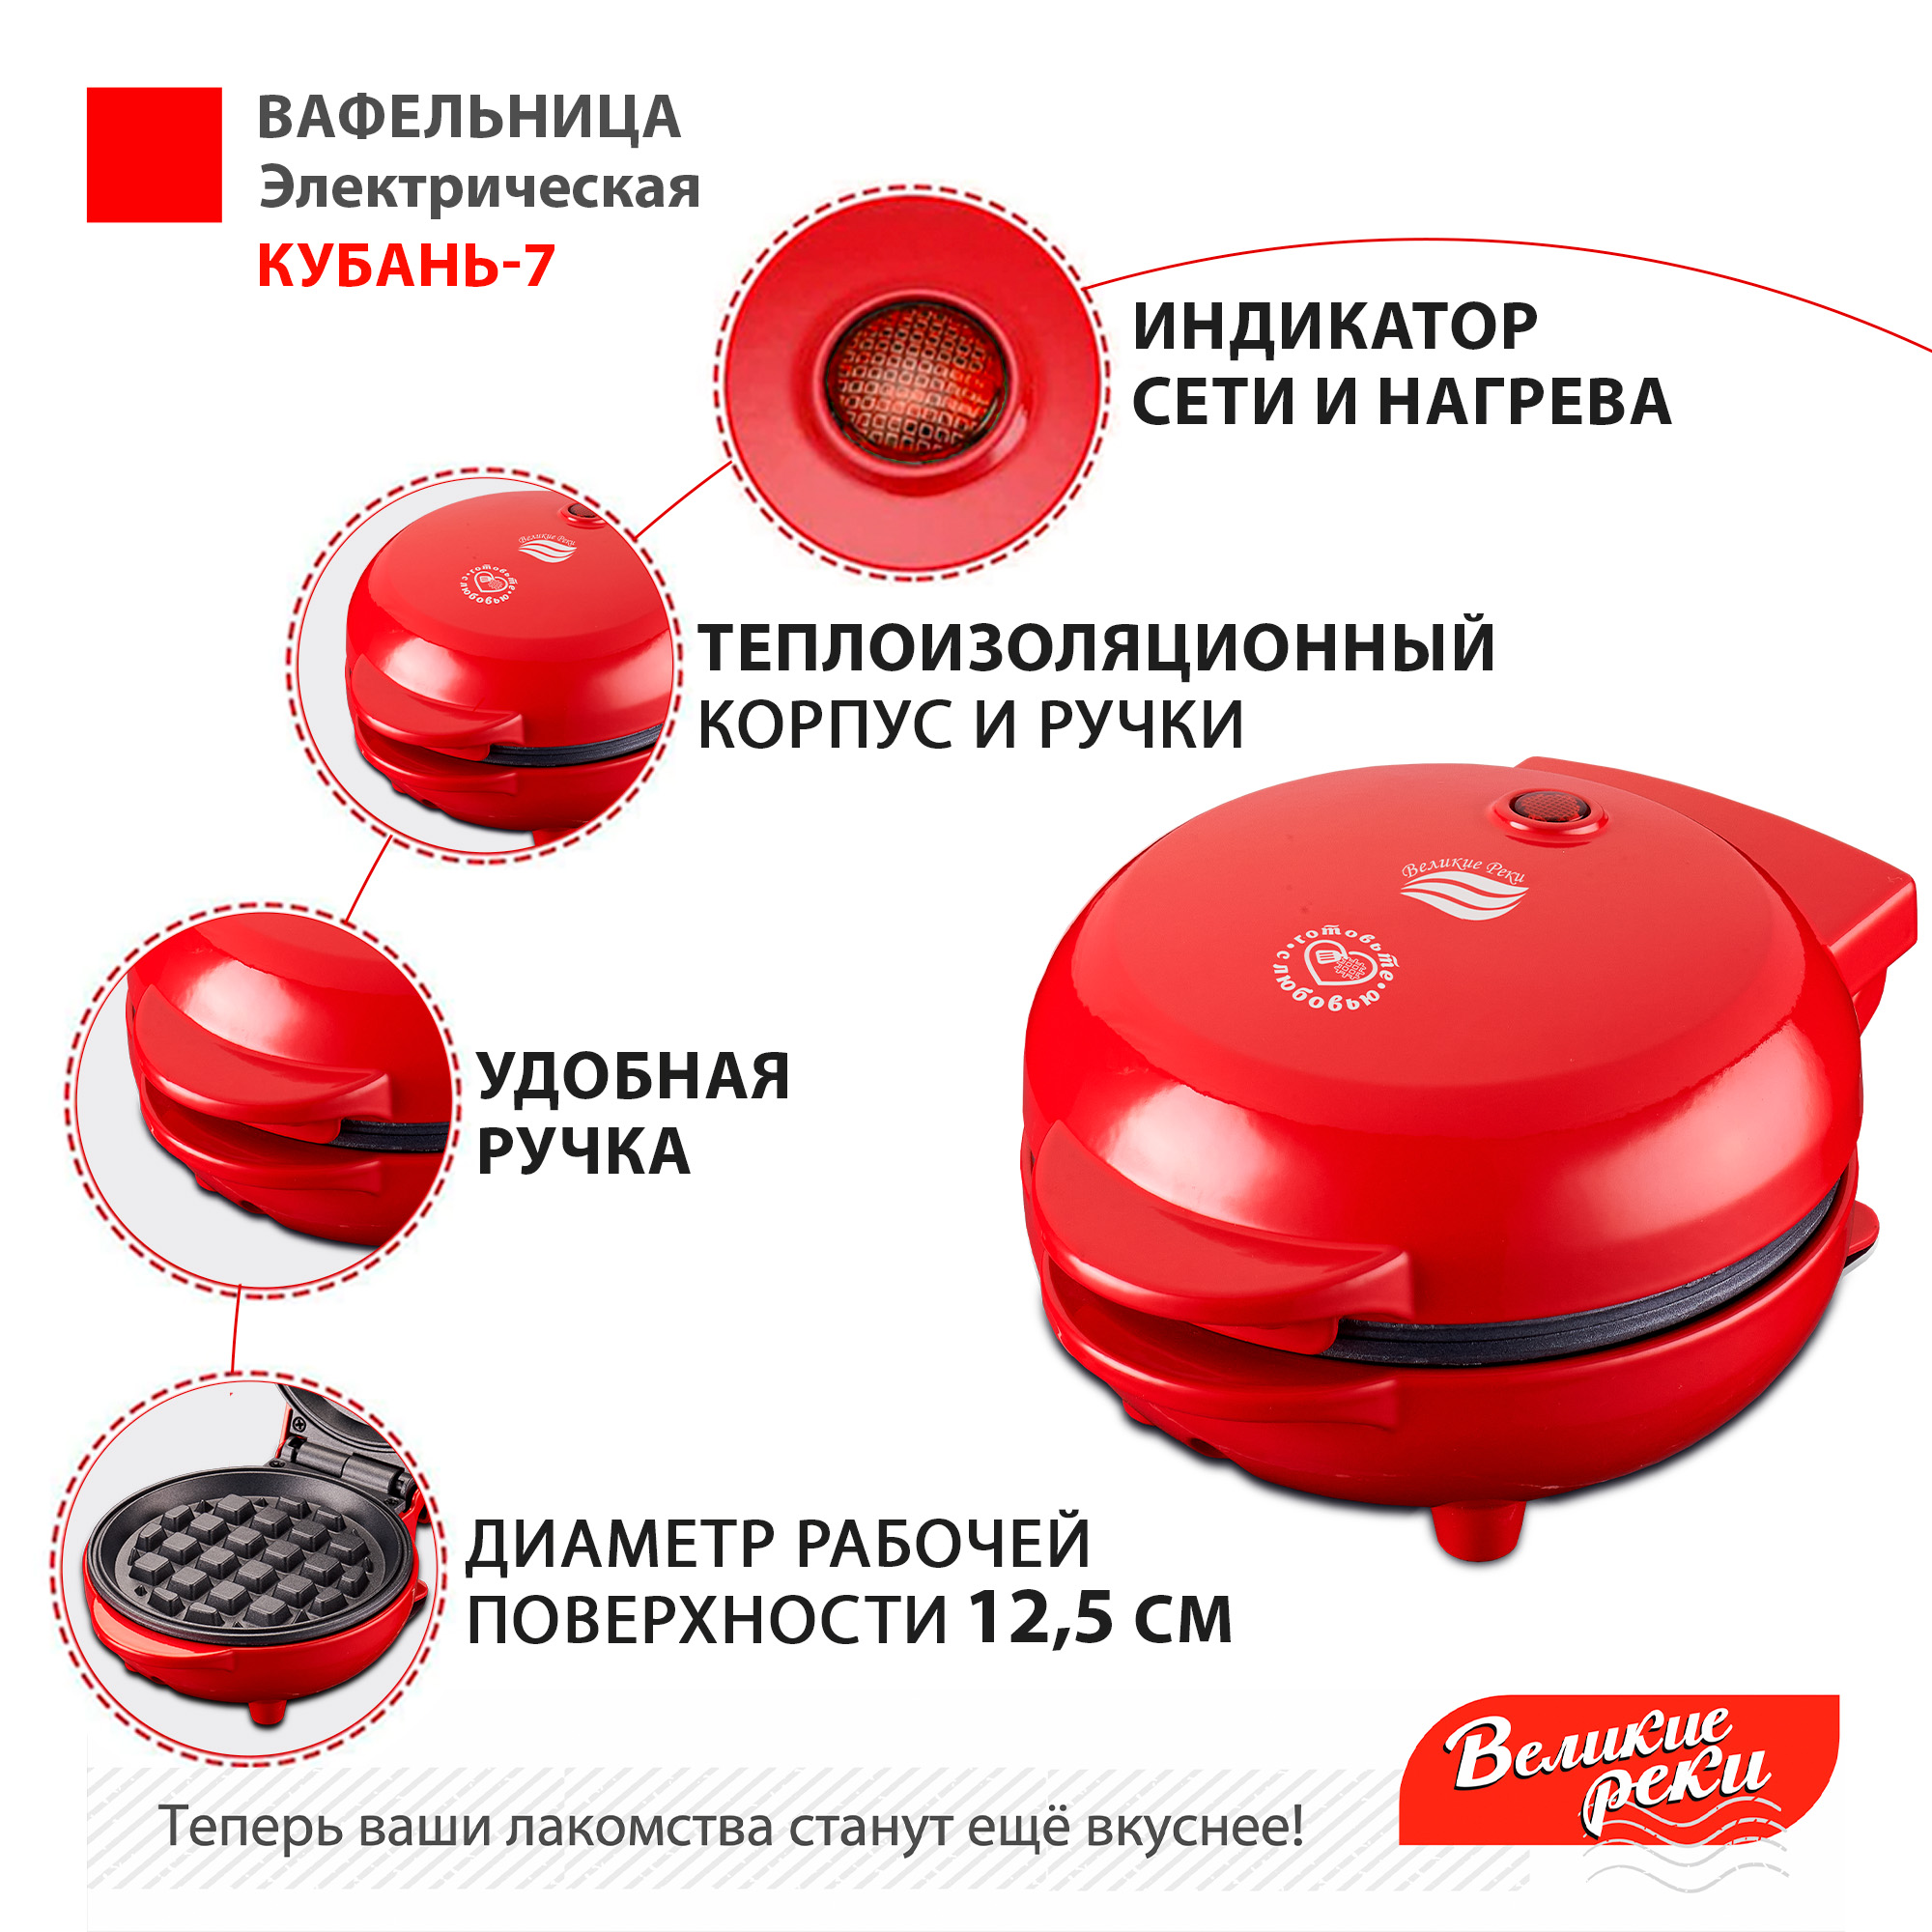 Вафельница Великие Реки Кубань-7 красная, суперкомпактный размер, диаметр 12.5 см, 550 Вт, в комплекте набор трафаретов для сахарной пудры